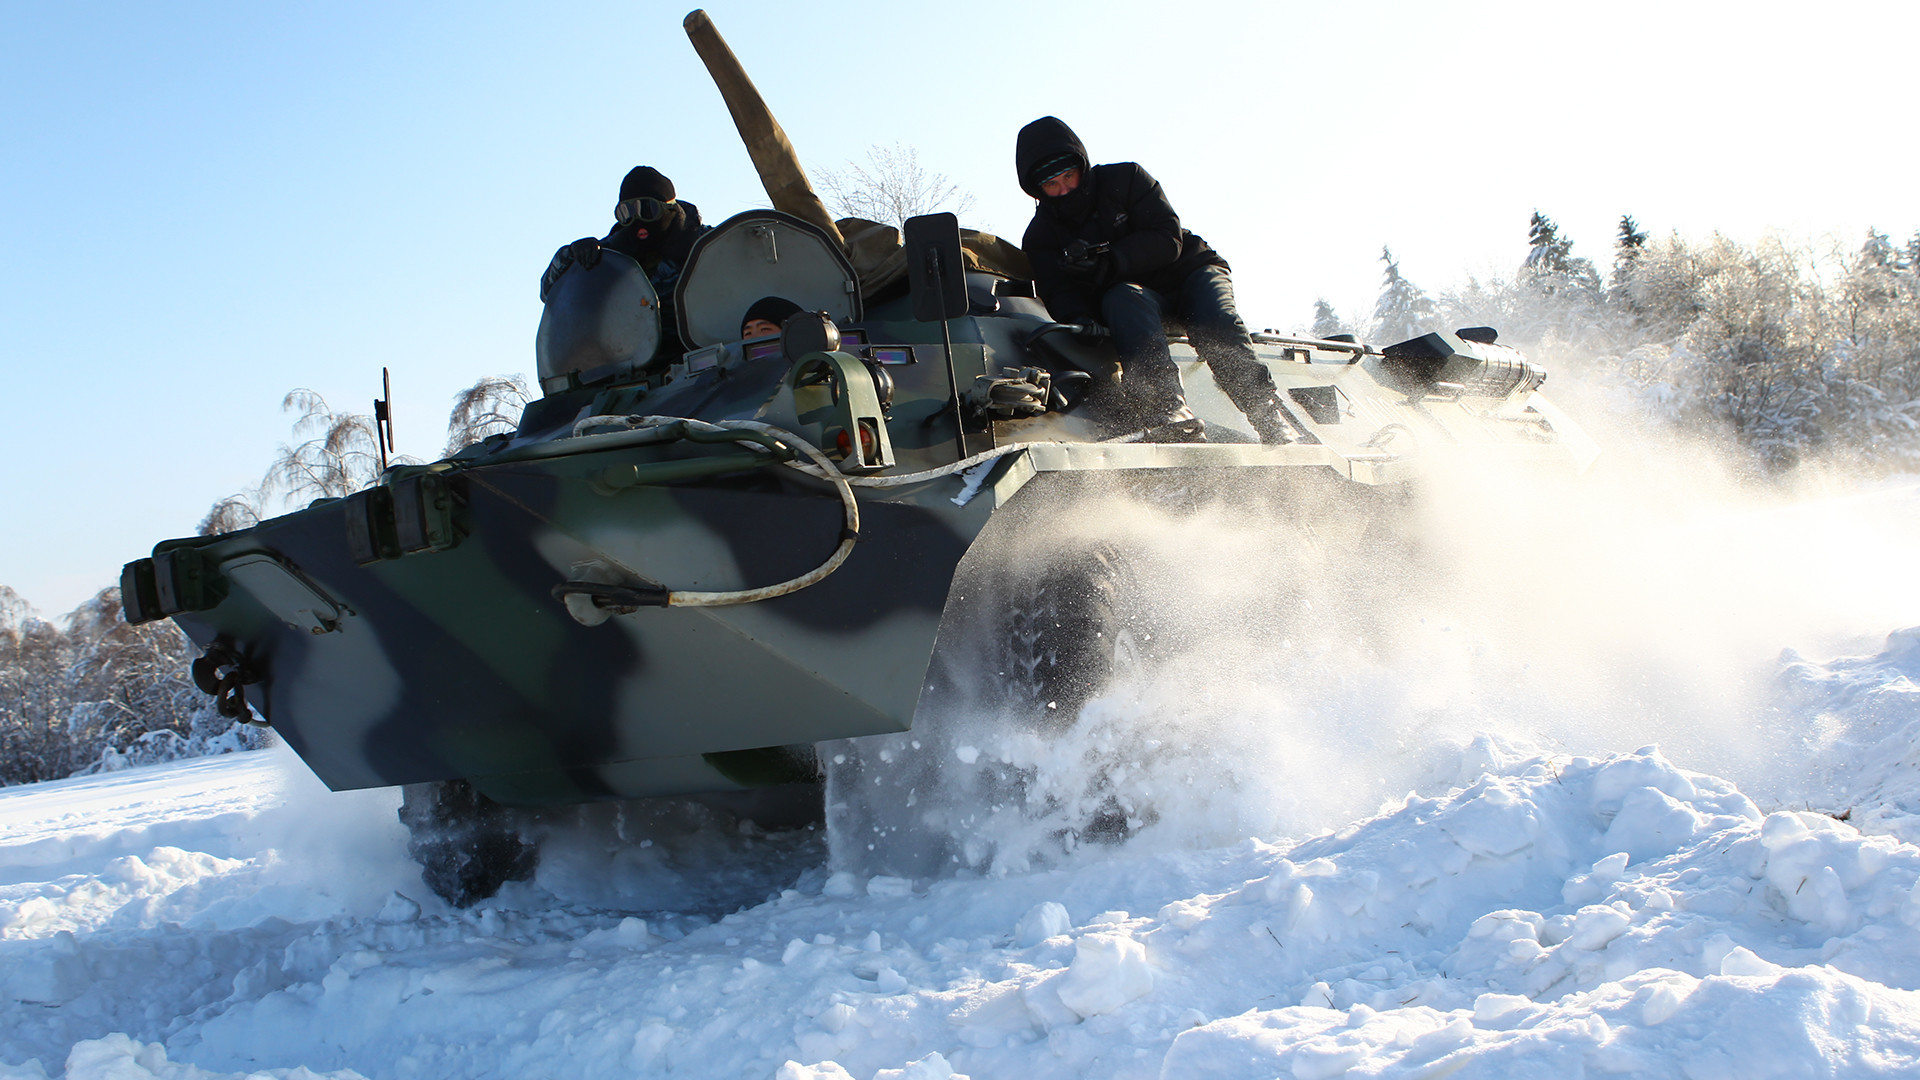 Pripadnici moskovskog OMON-a obučavaju se upravljanju borbenim oklopnim transporterima na neravnom terenu. 